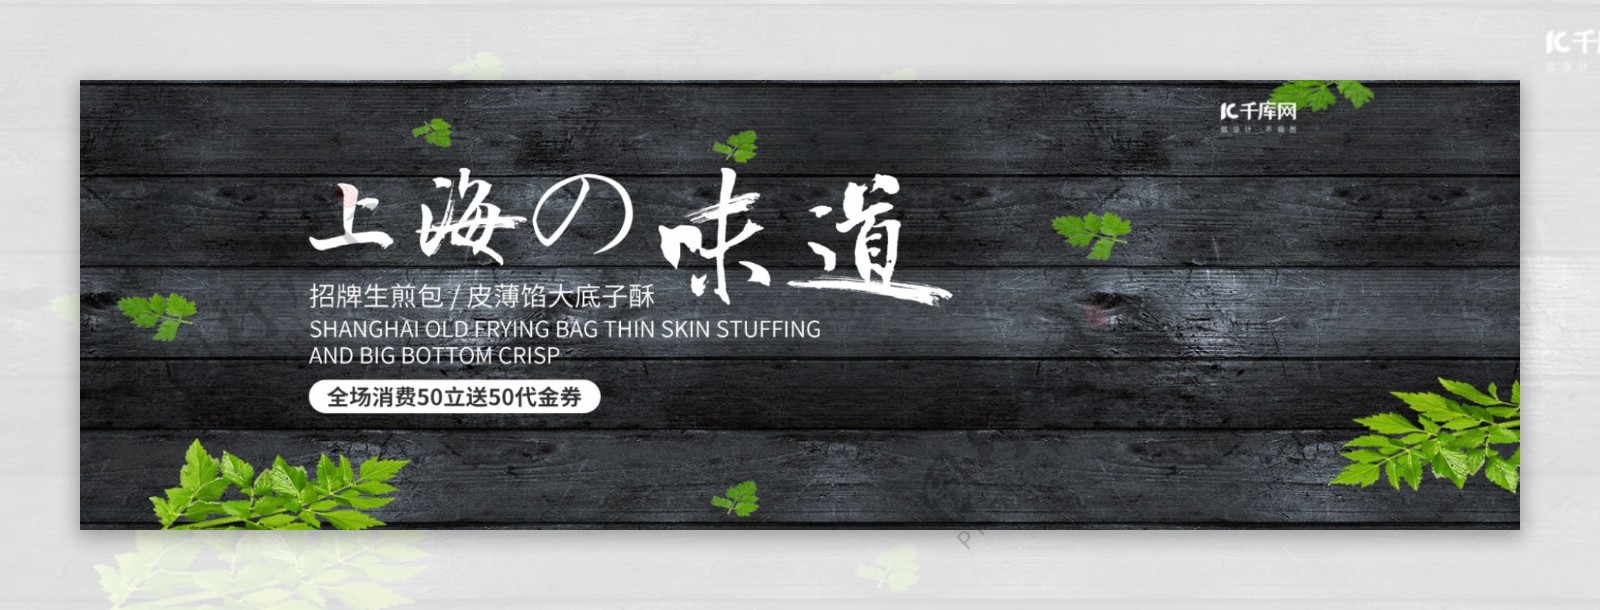 电商食品茶饮上海美食水煎包banner